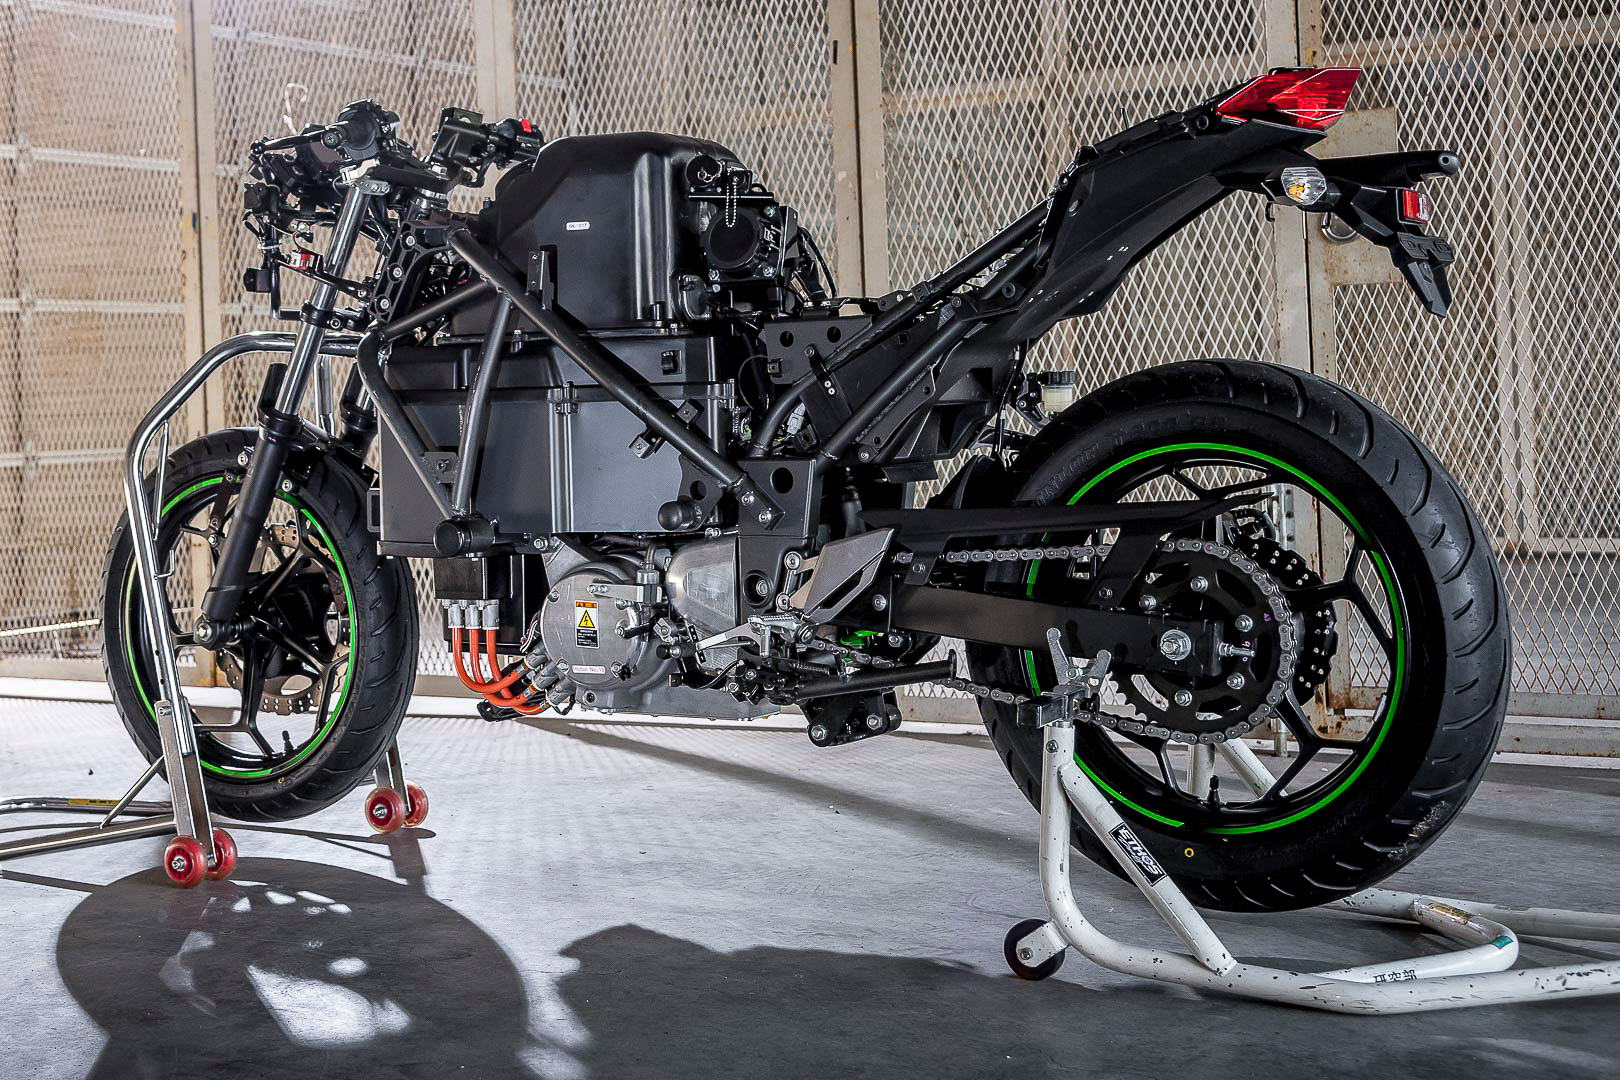 Kawasaki xác nhận sẽ ra mắt 3 chiếc mô tô điện vào năm 2022